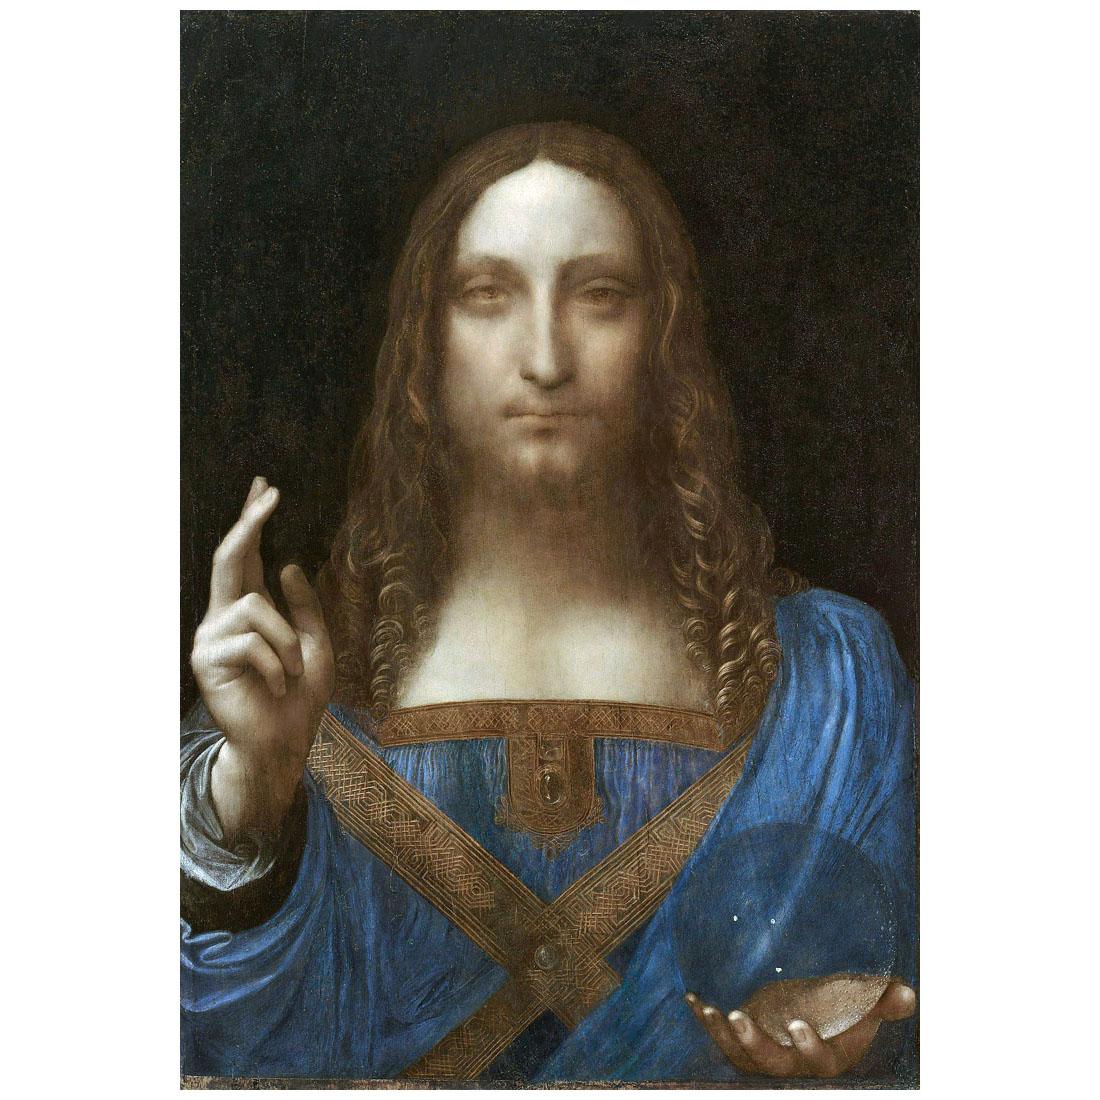 Leonardo da Vinci (?). Salvator Mundi. 1500. Louvre Abu Dhabi